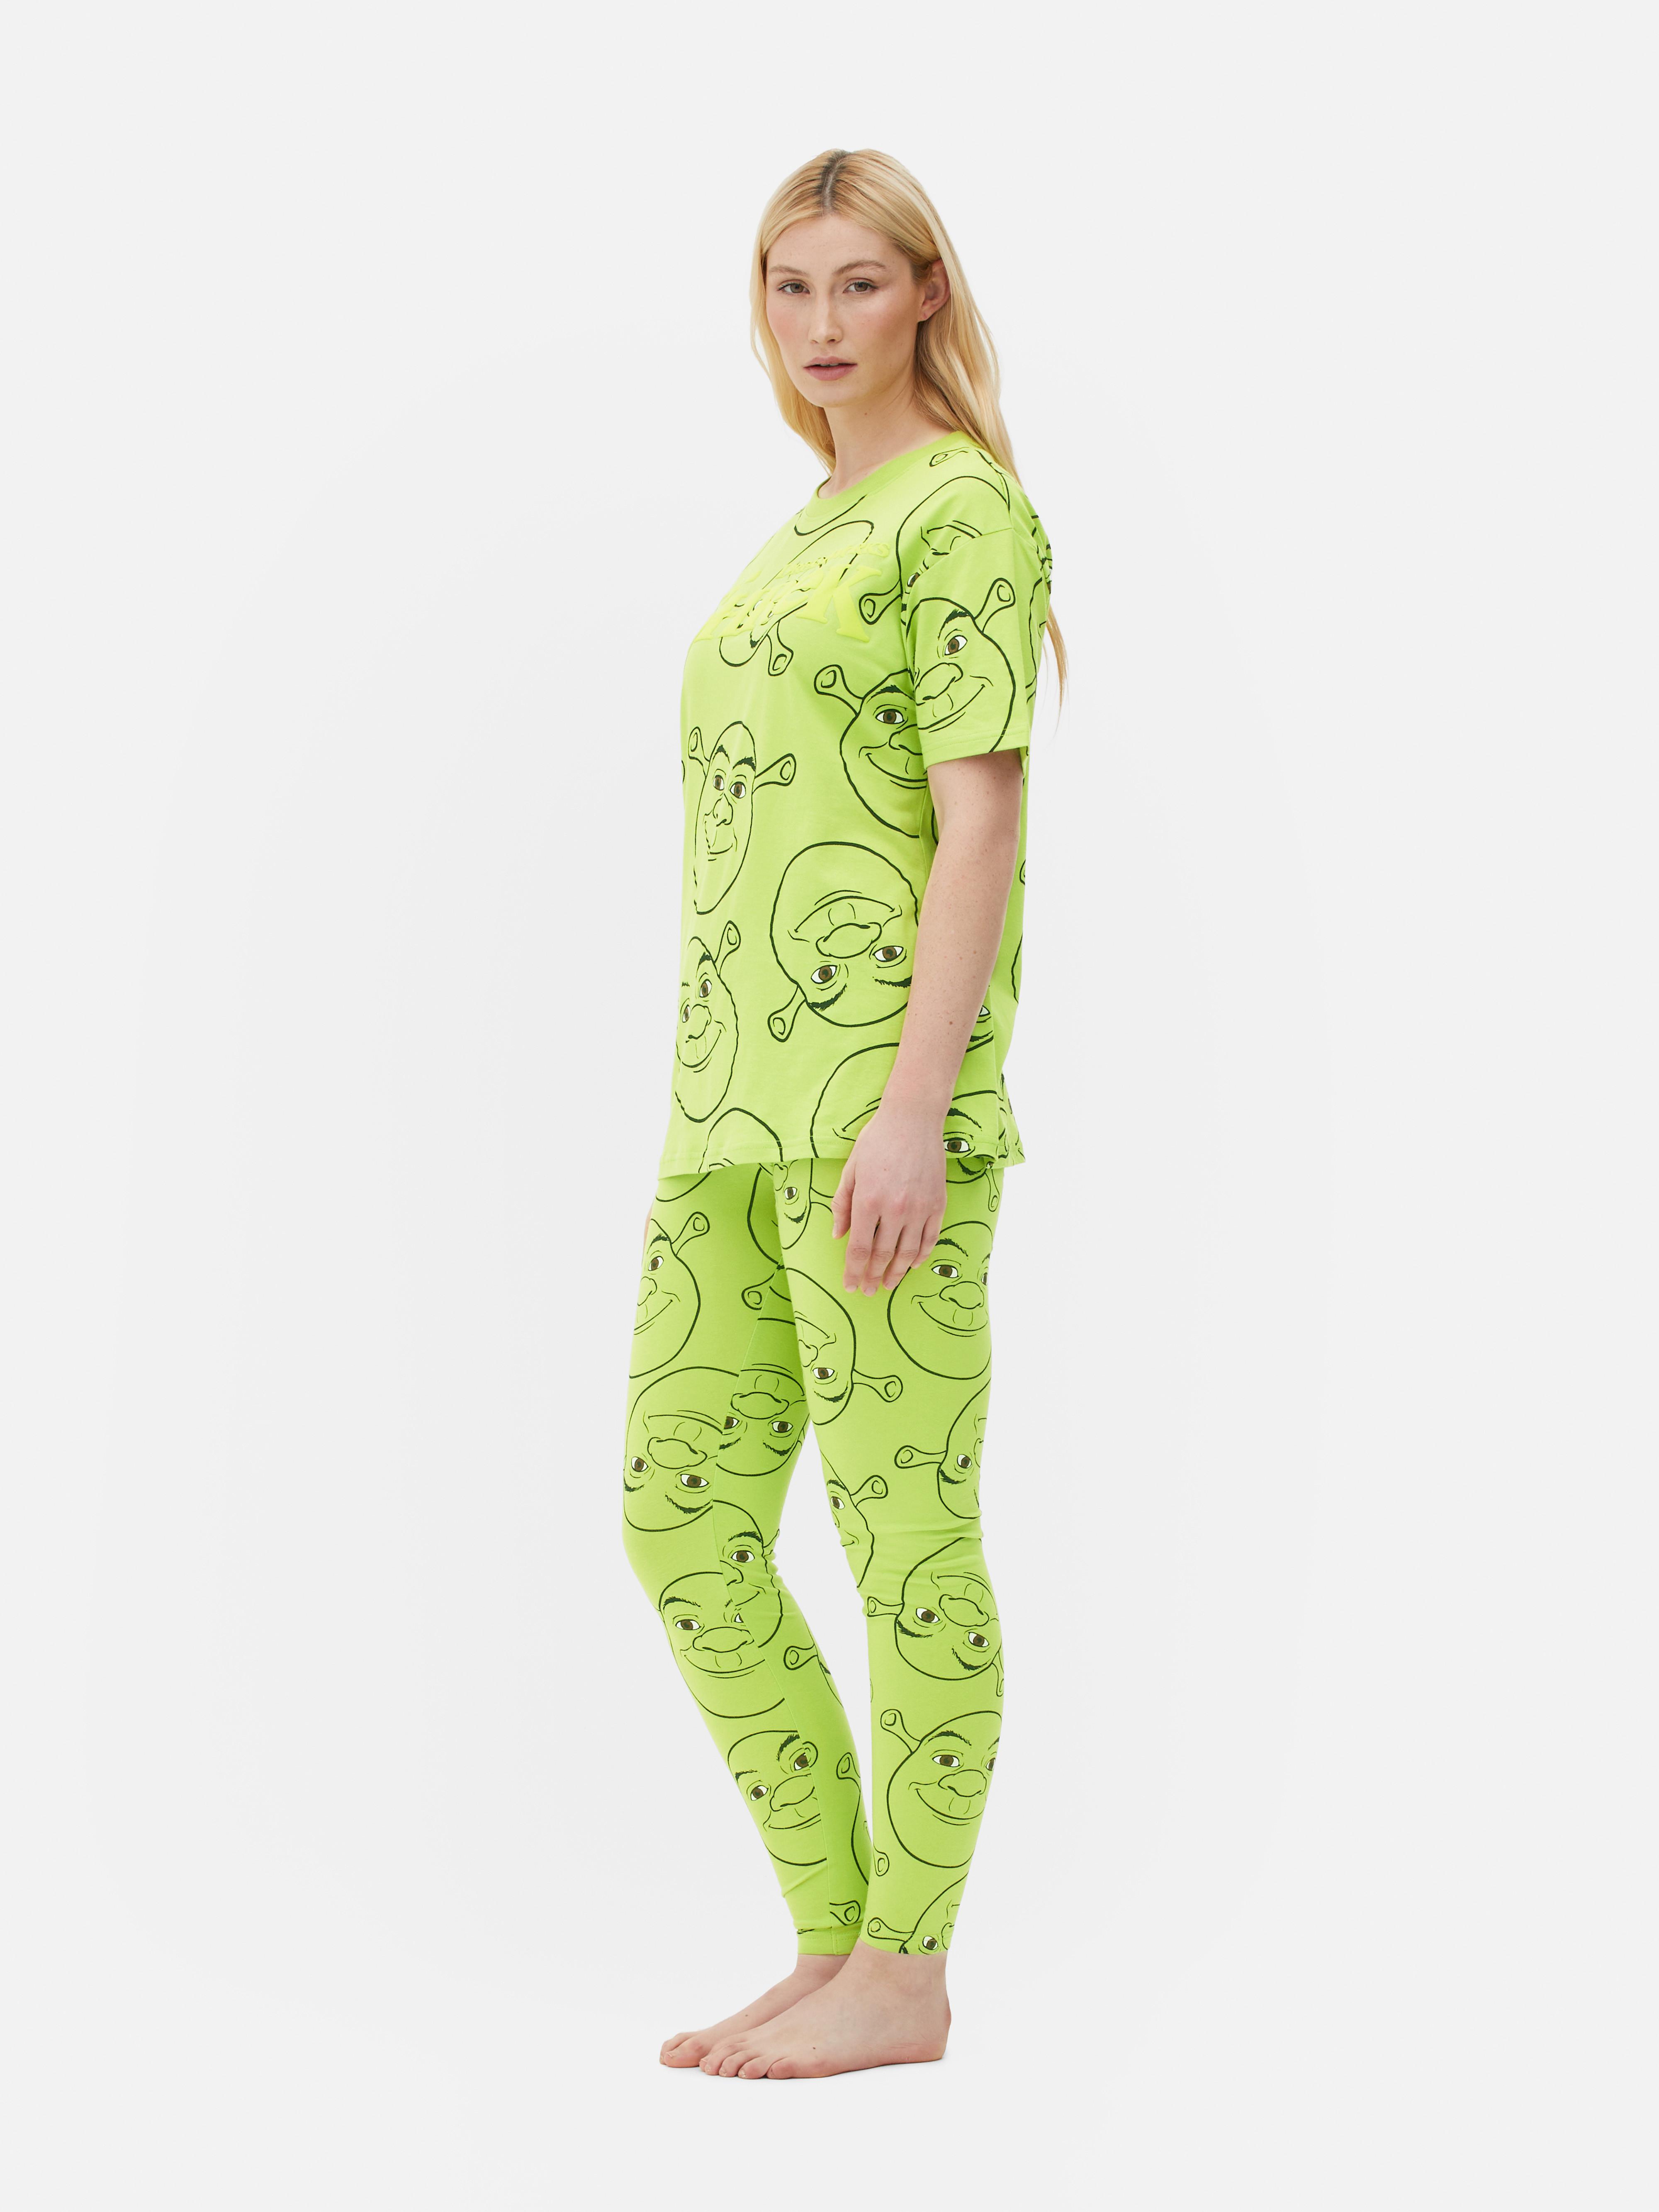 Shrek Pajama Leggings